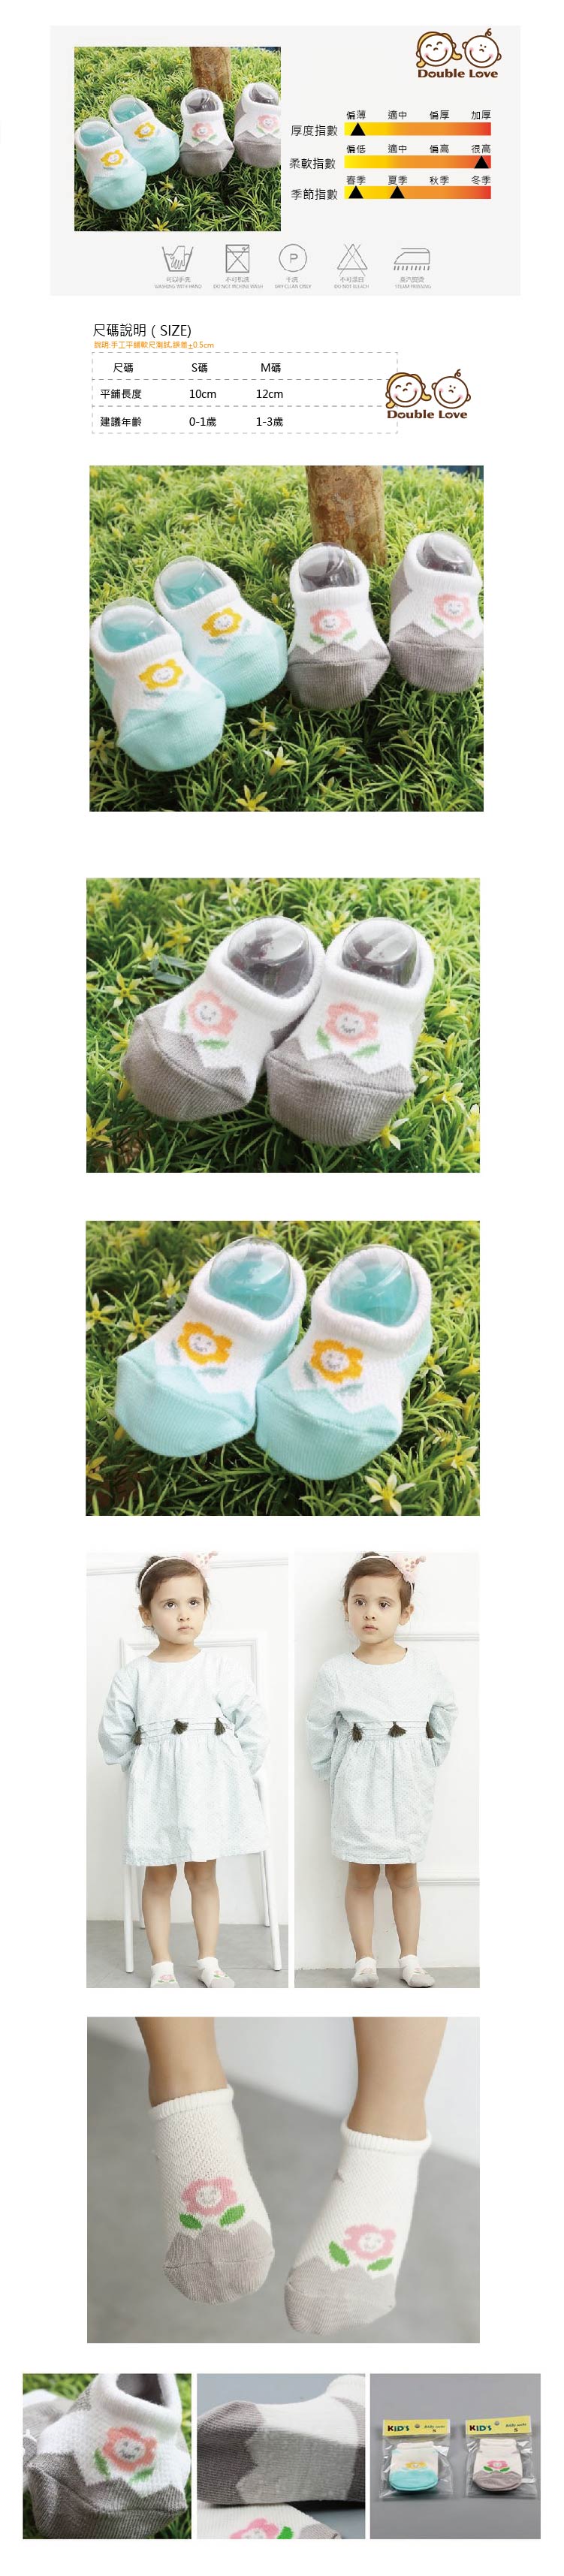 透氣網眼寶寶襪【JB0032】外貿寶寶透氣網眼寶寶襪 嬰兒襪 新生兒襪 造型襪 精梳棉 (0-1Y/1-3Y)